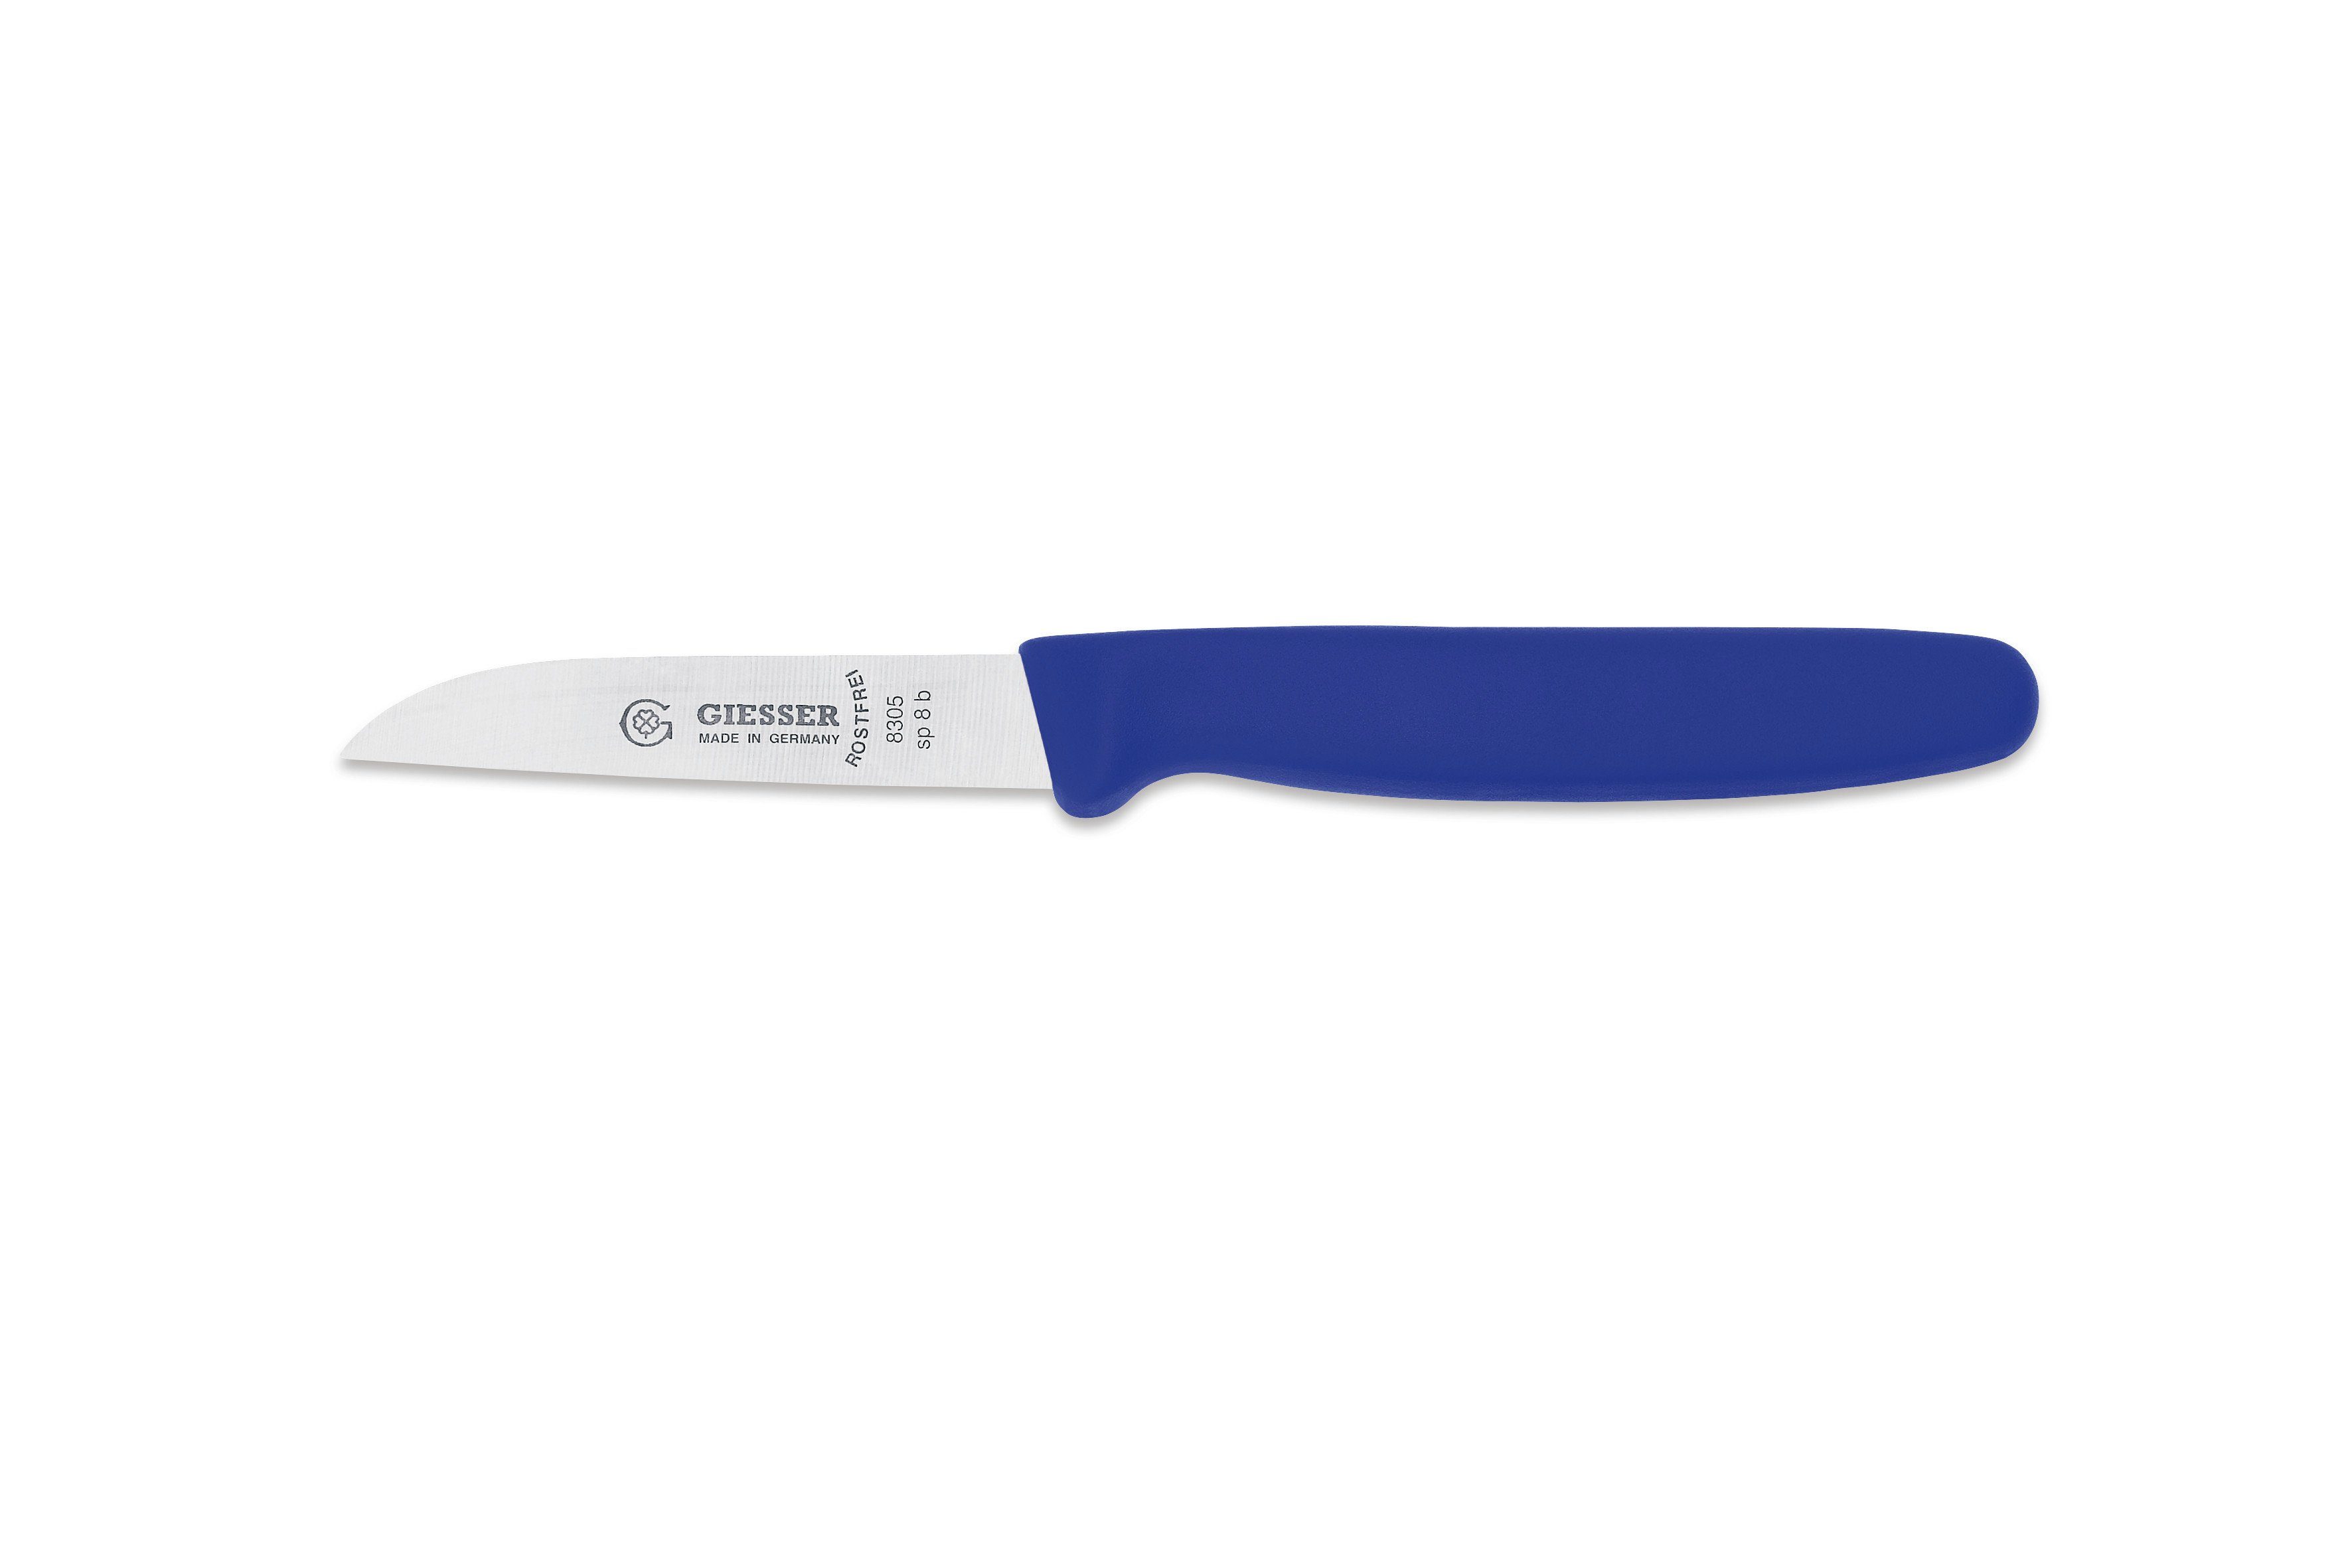 Giesser Messer Gemüsemesser Küchenmesser 8305 sp 8 alle Farben, Küchenmesser gerade Schneide 8 cm, Made in Germany Blau